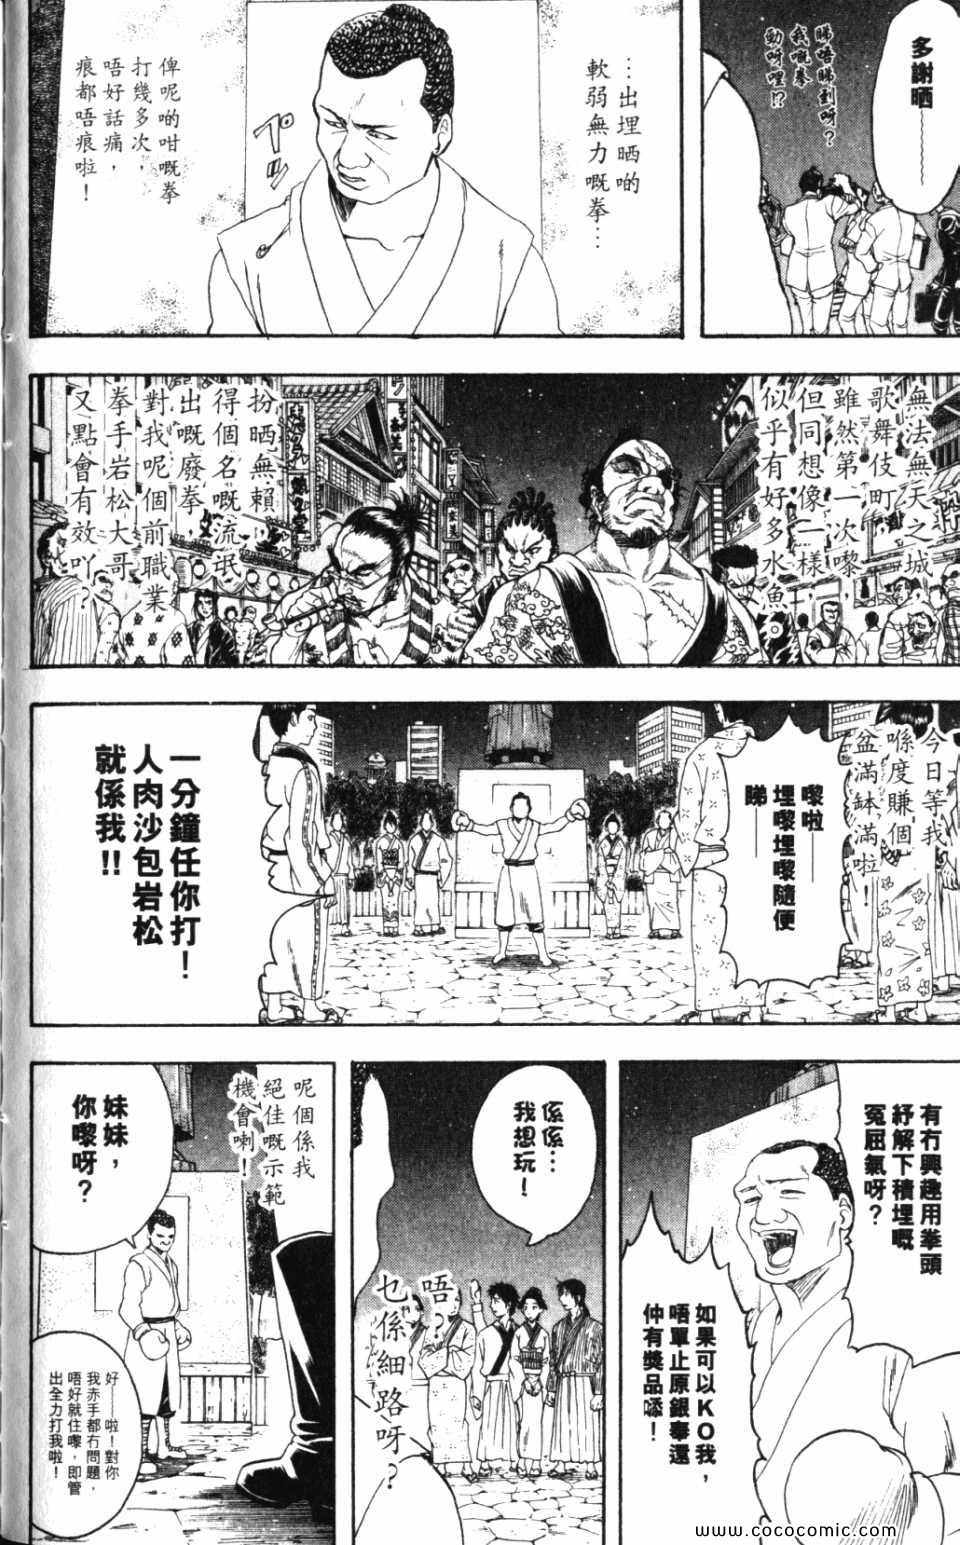 銀魂 Gin Tama 漫畫38卷 第91頁 銀魂38卷劇情 看漫畫